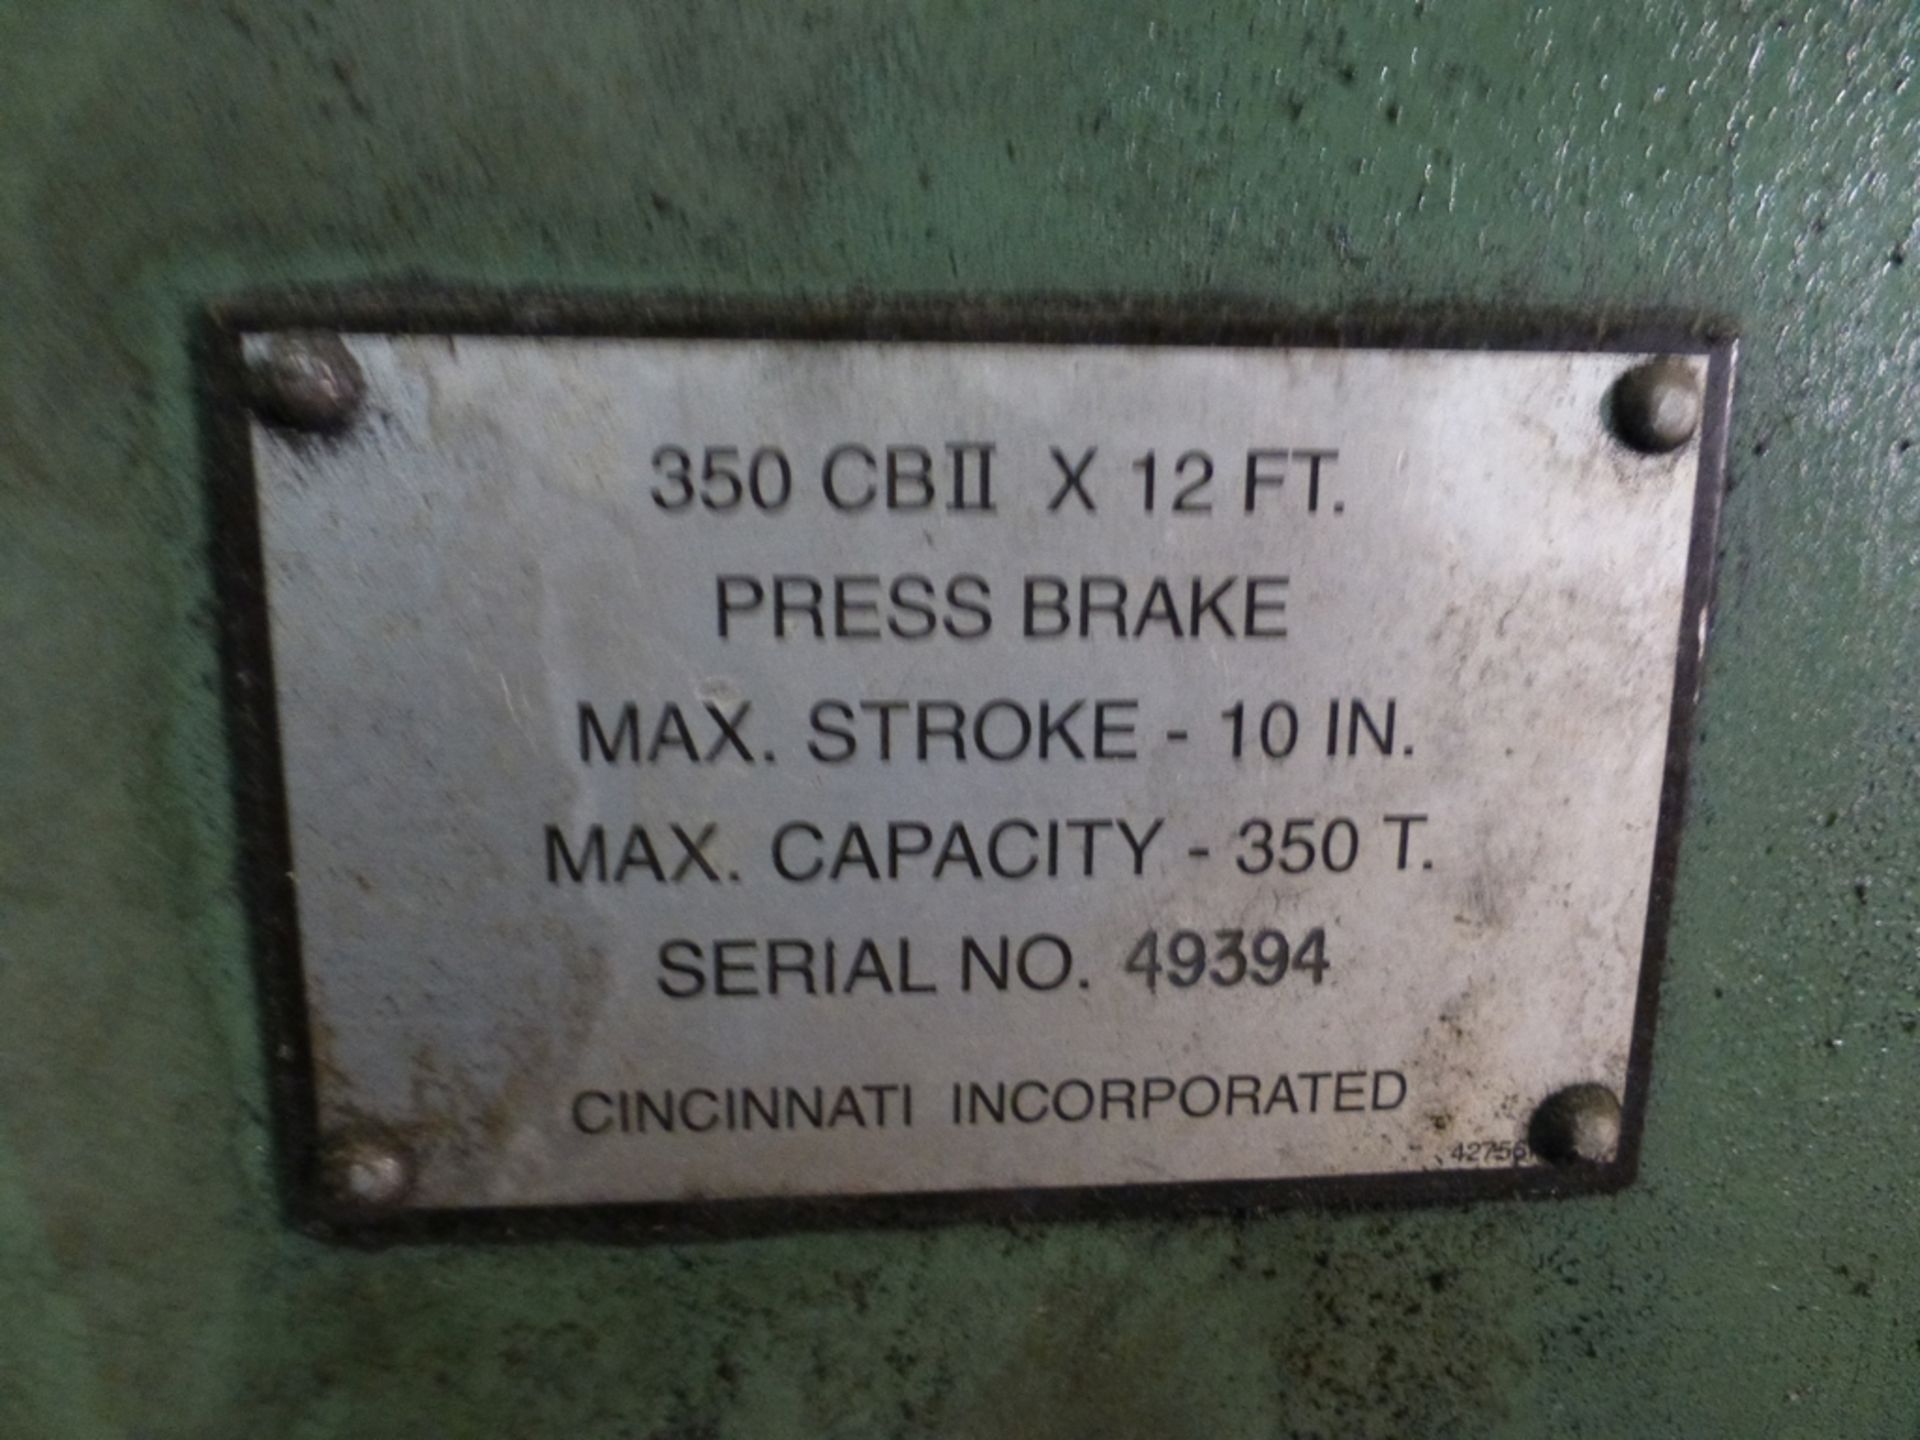 Cincinnati 350-Ton x 12' Hydraulic Press Brake|Model 350 CBII; 14' LOA - 12' 6" Between Housings; - Image 11 of 11